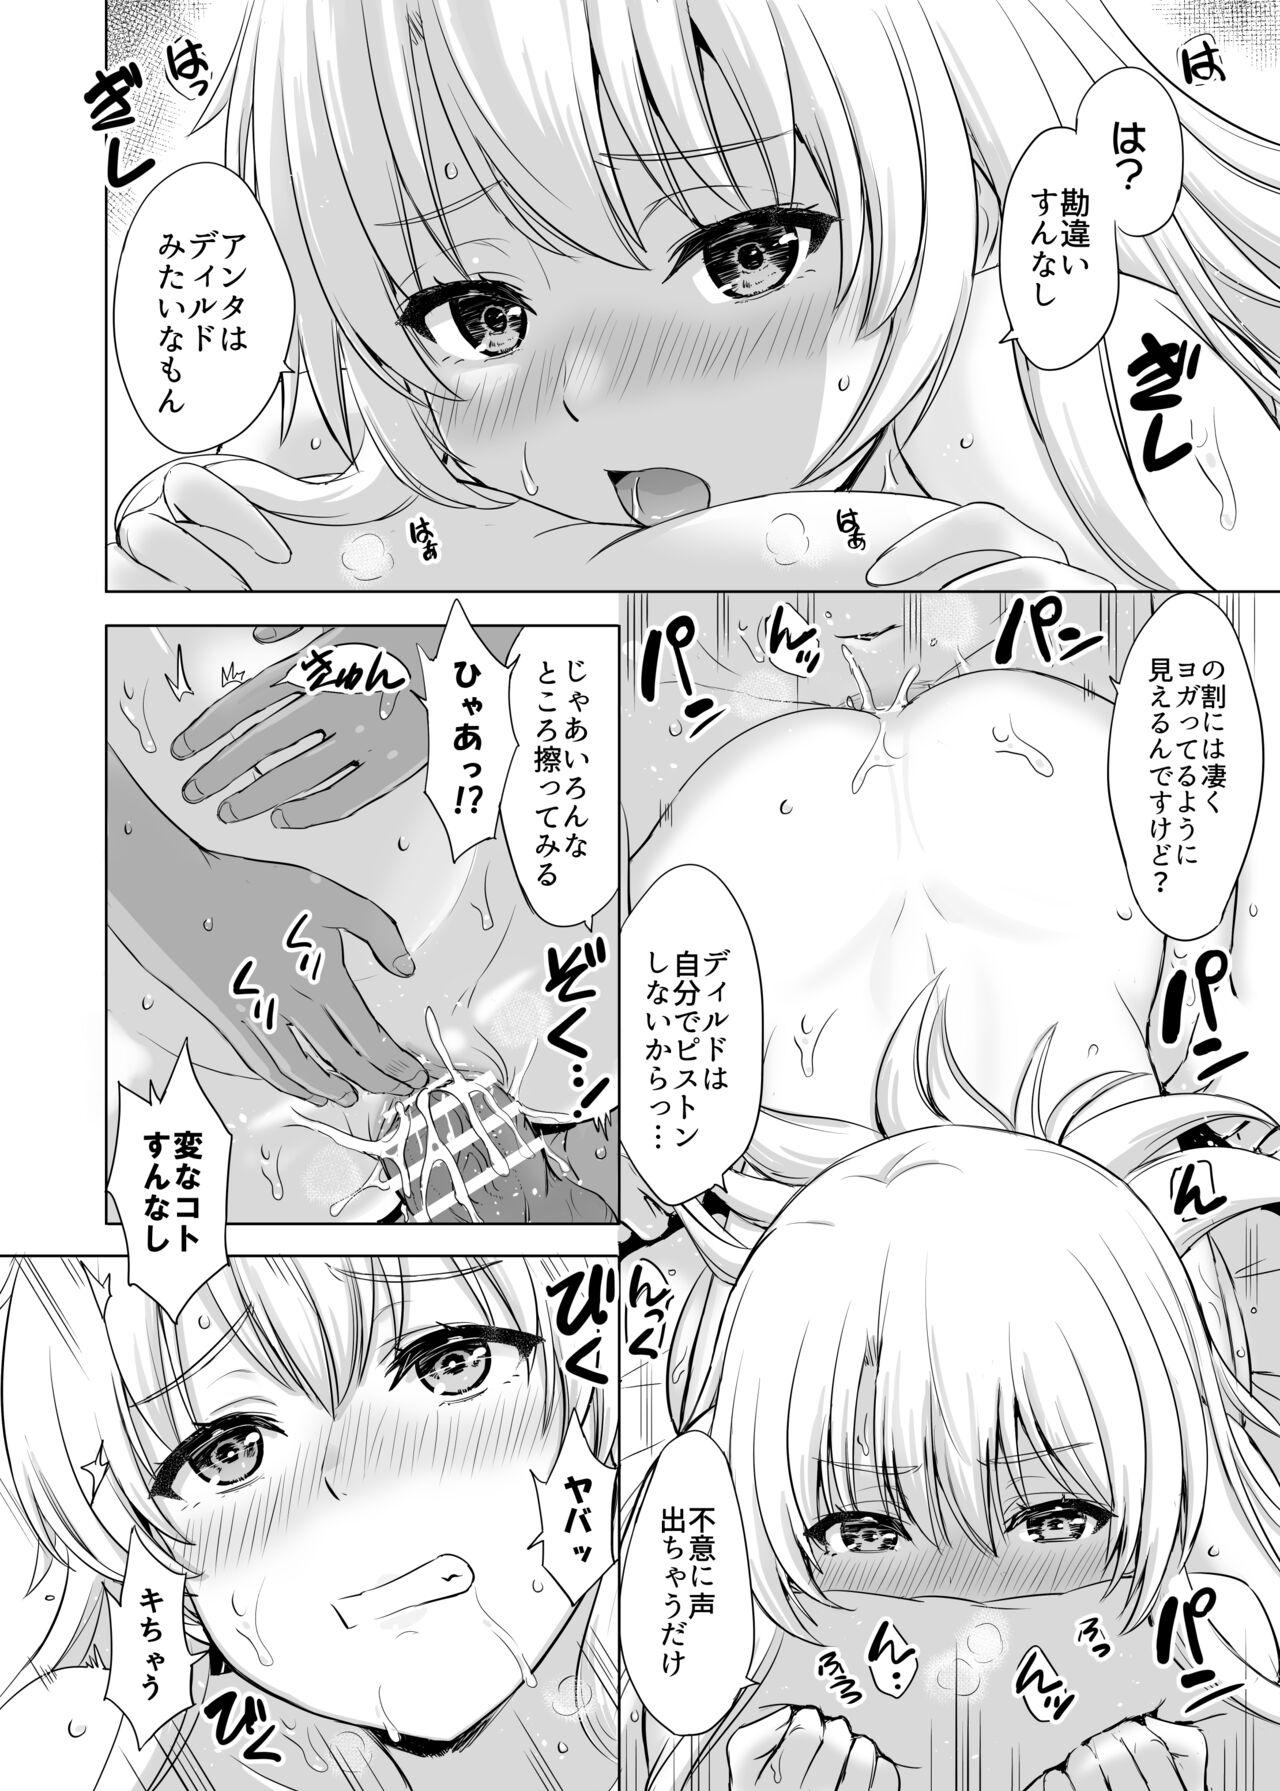 Real Orgasms Aashi-san Manga Sono 1 - Yahari ore no seishun love come wa machigatteiru Abg - Page 2